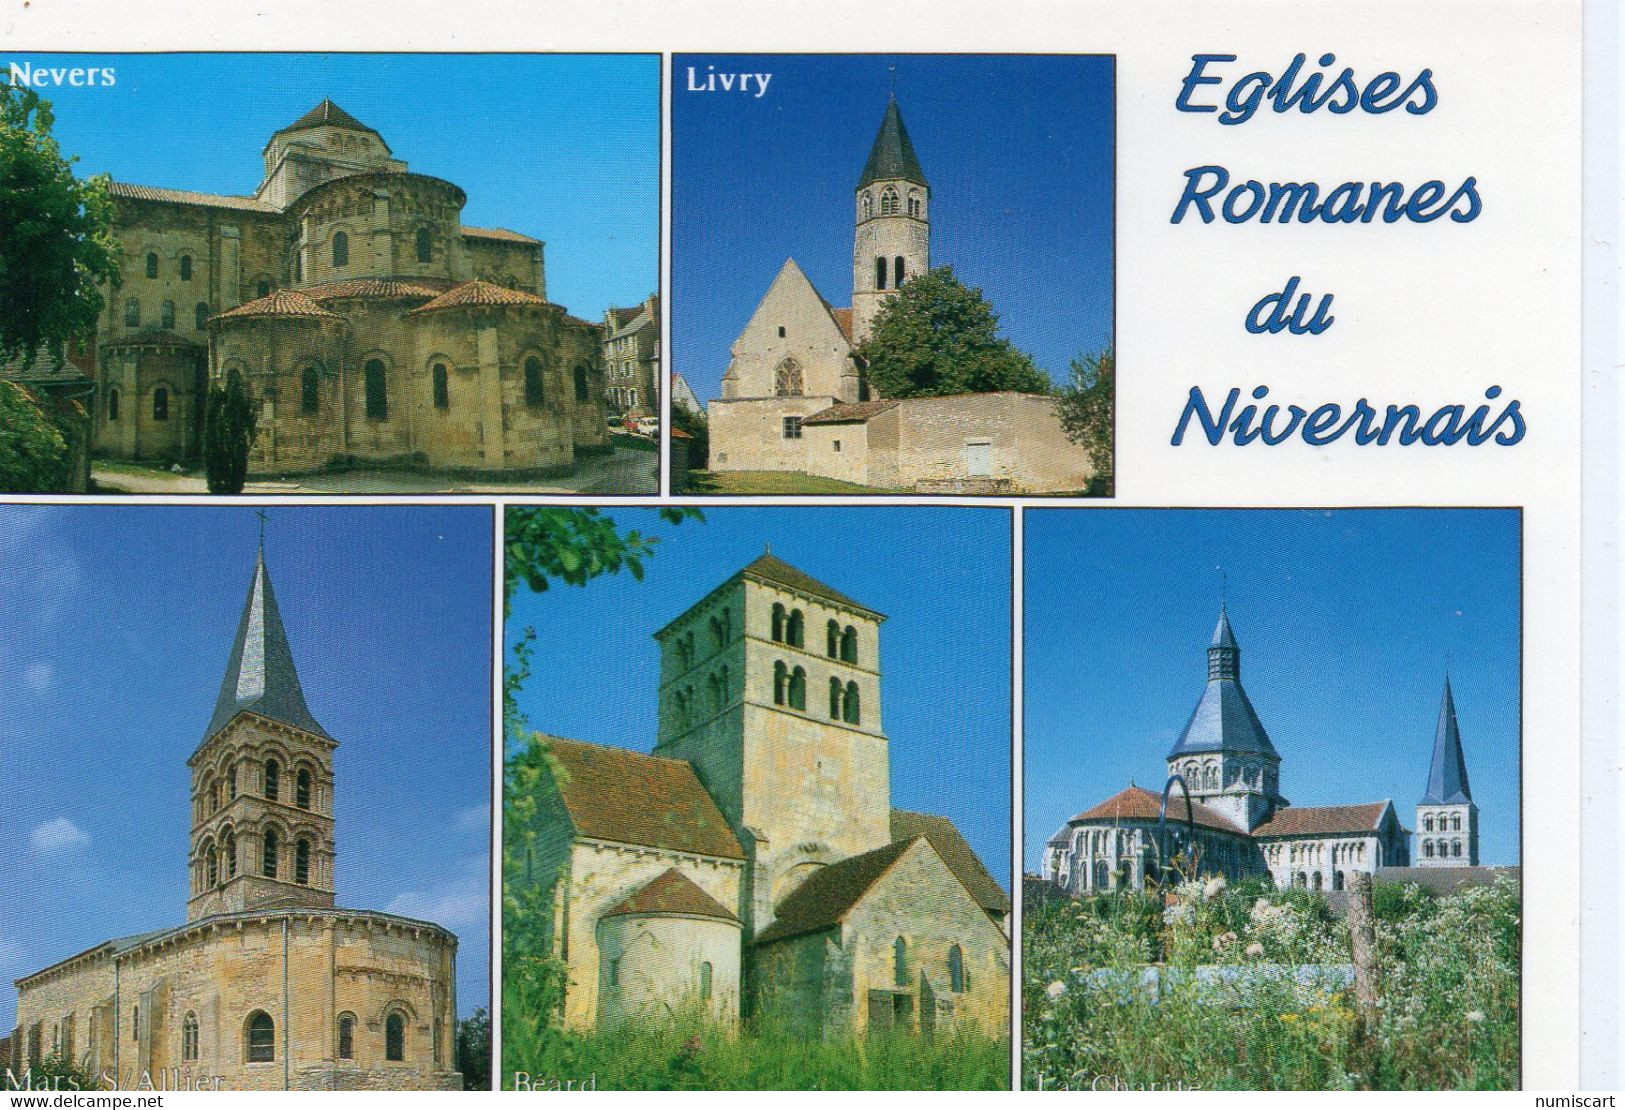 Eglises Romanes Du Nivernais Nevers Livry Mars Sur Allier Béard Bidolet La Charité - Monuments